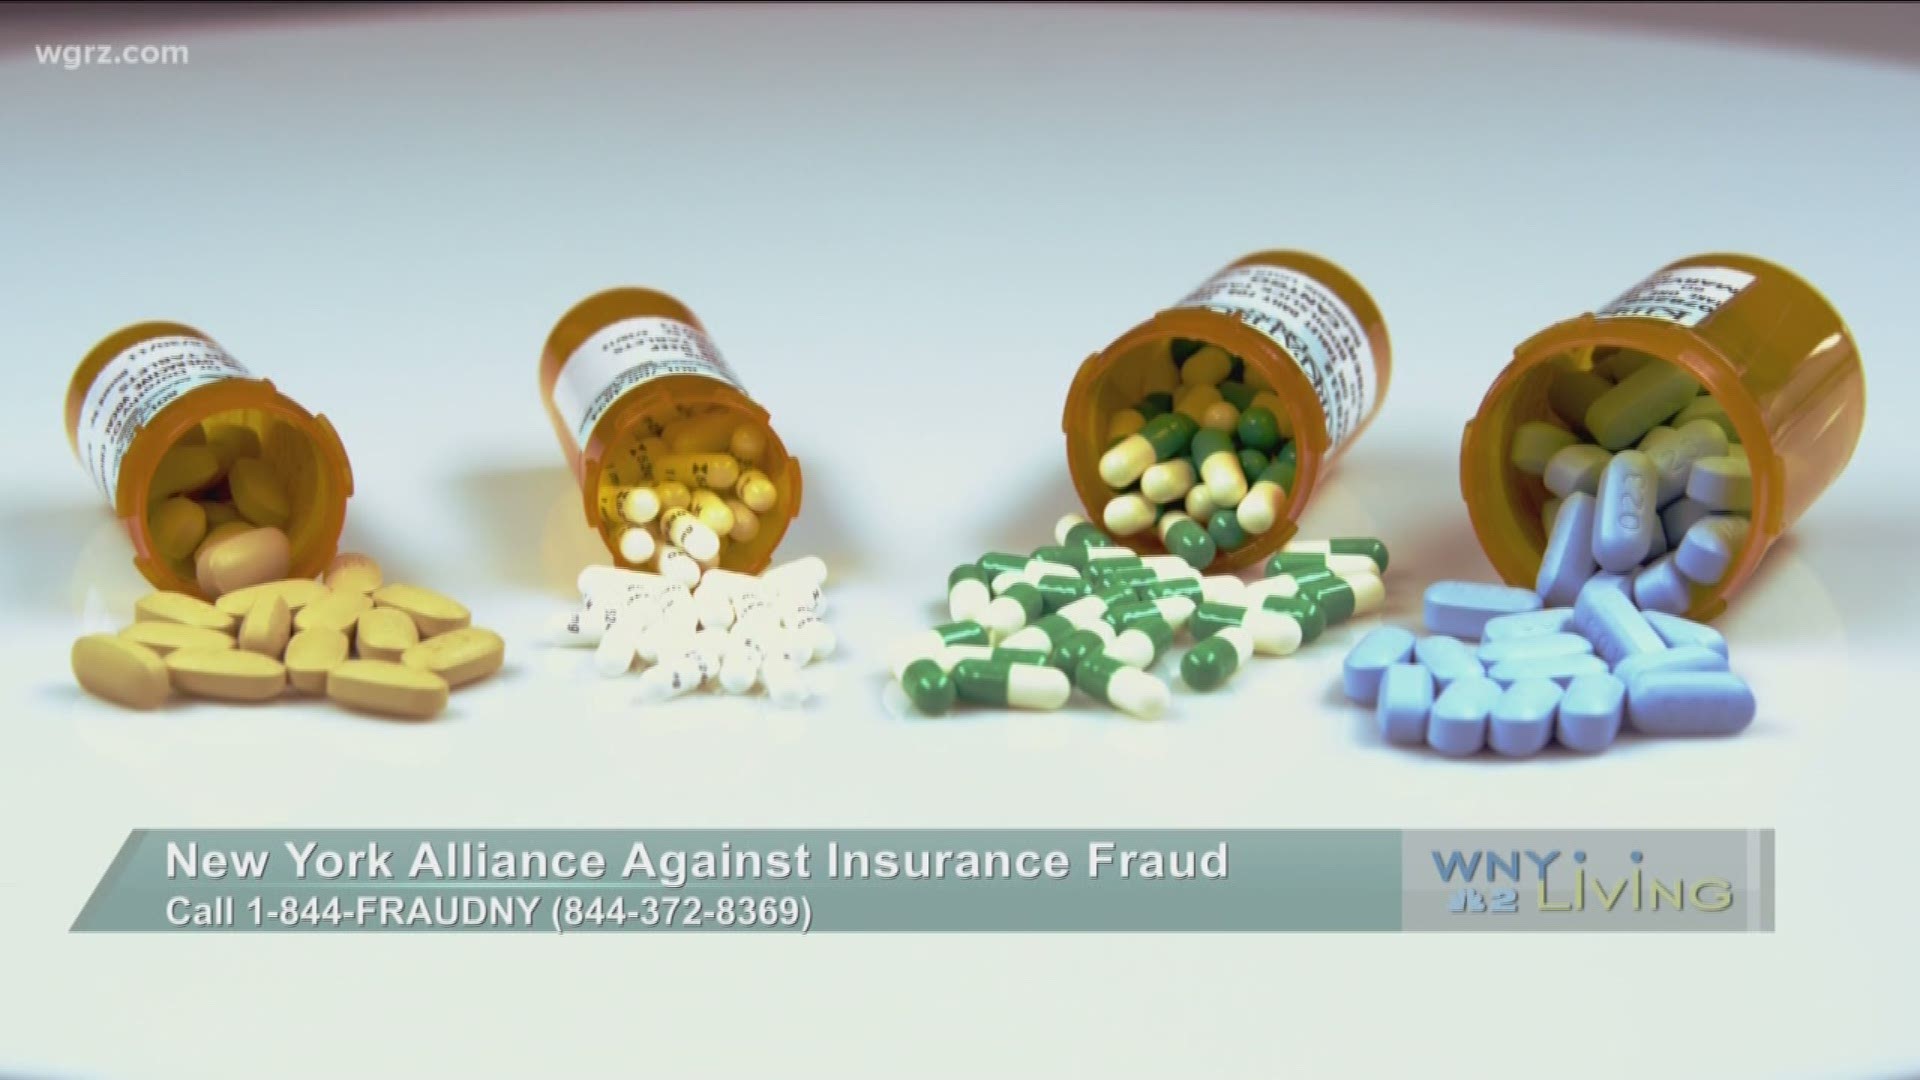 WNY Living - September 10 - New York Alliance Against Insurance Fraud